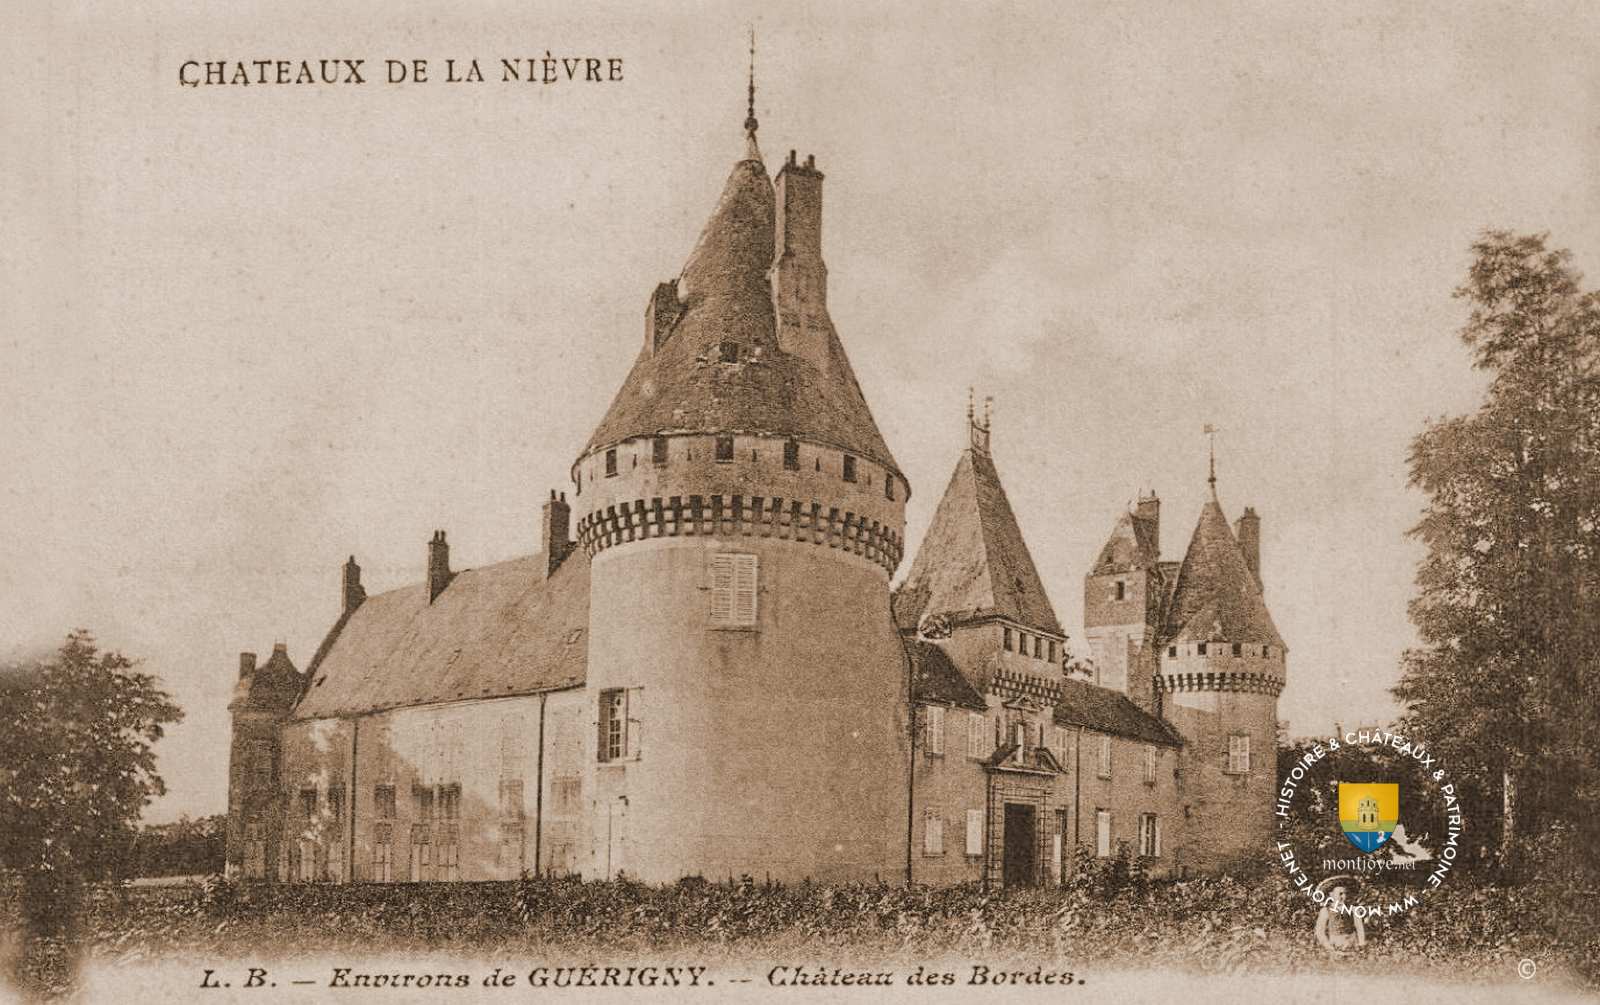 Château des Bordes, Urzy